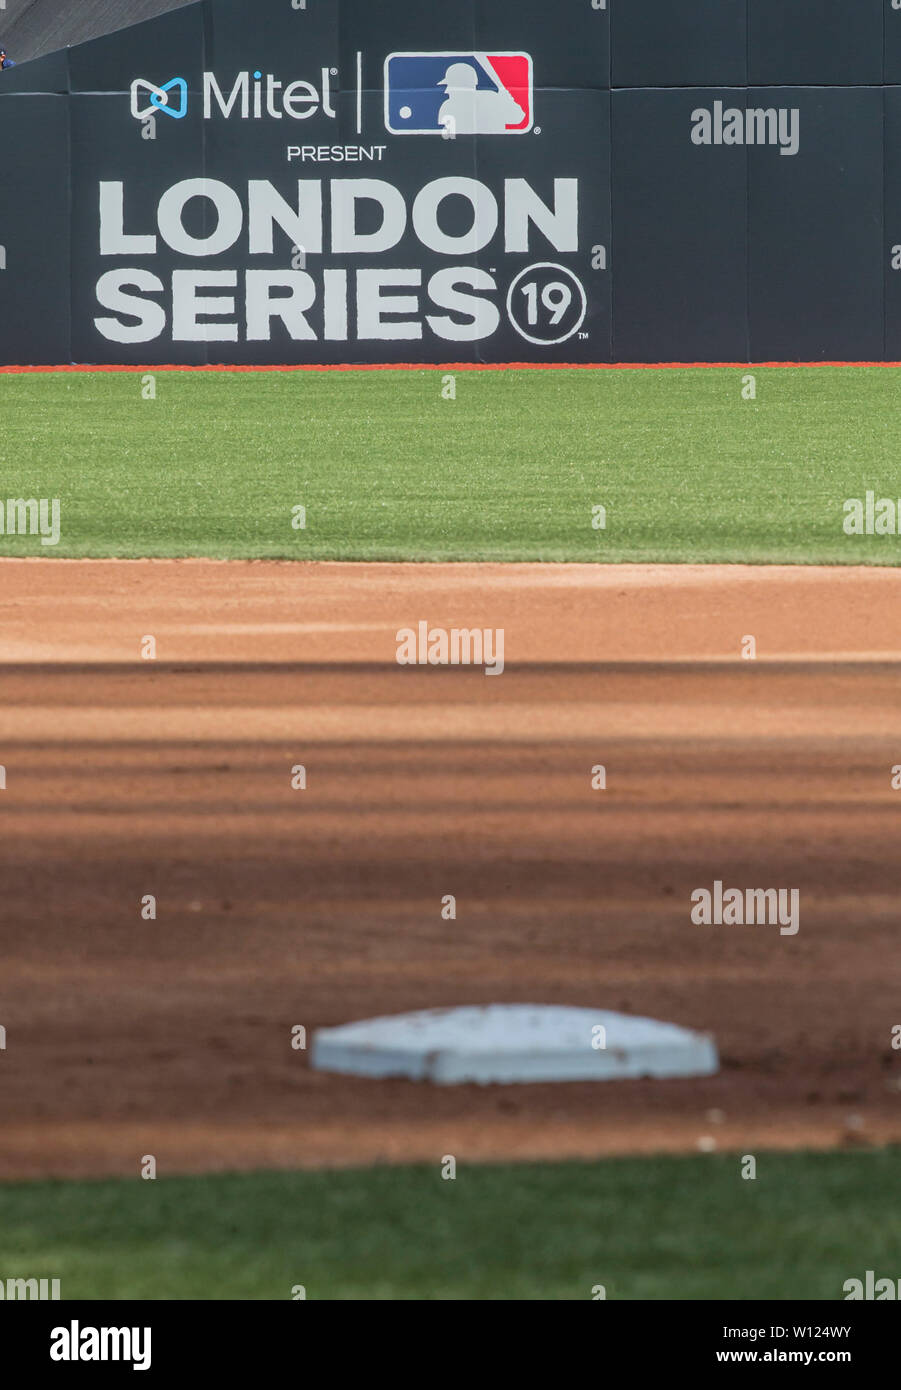 Stade de Londres, Londres, Royaume-Uni. 29 Juin, 2019. Mitel &AMP ; présent MLB baseball série Londres, Boston Red Sox contre New York Yankees ; une vue de la base avec la 2ème série de Londres 2019 logo sur le mur d'Action Crédit : Plus Sport/Alamy Live News Banque D'Images